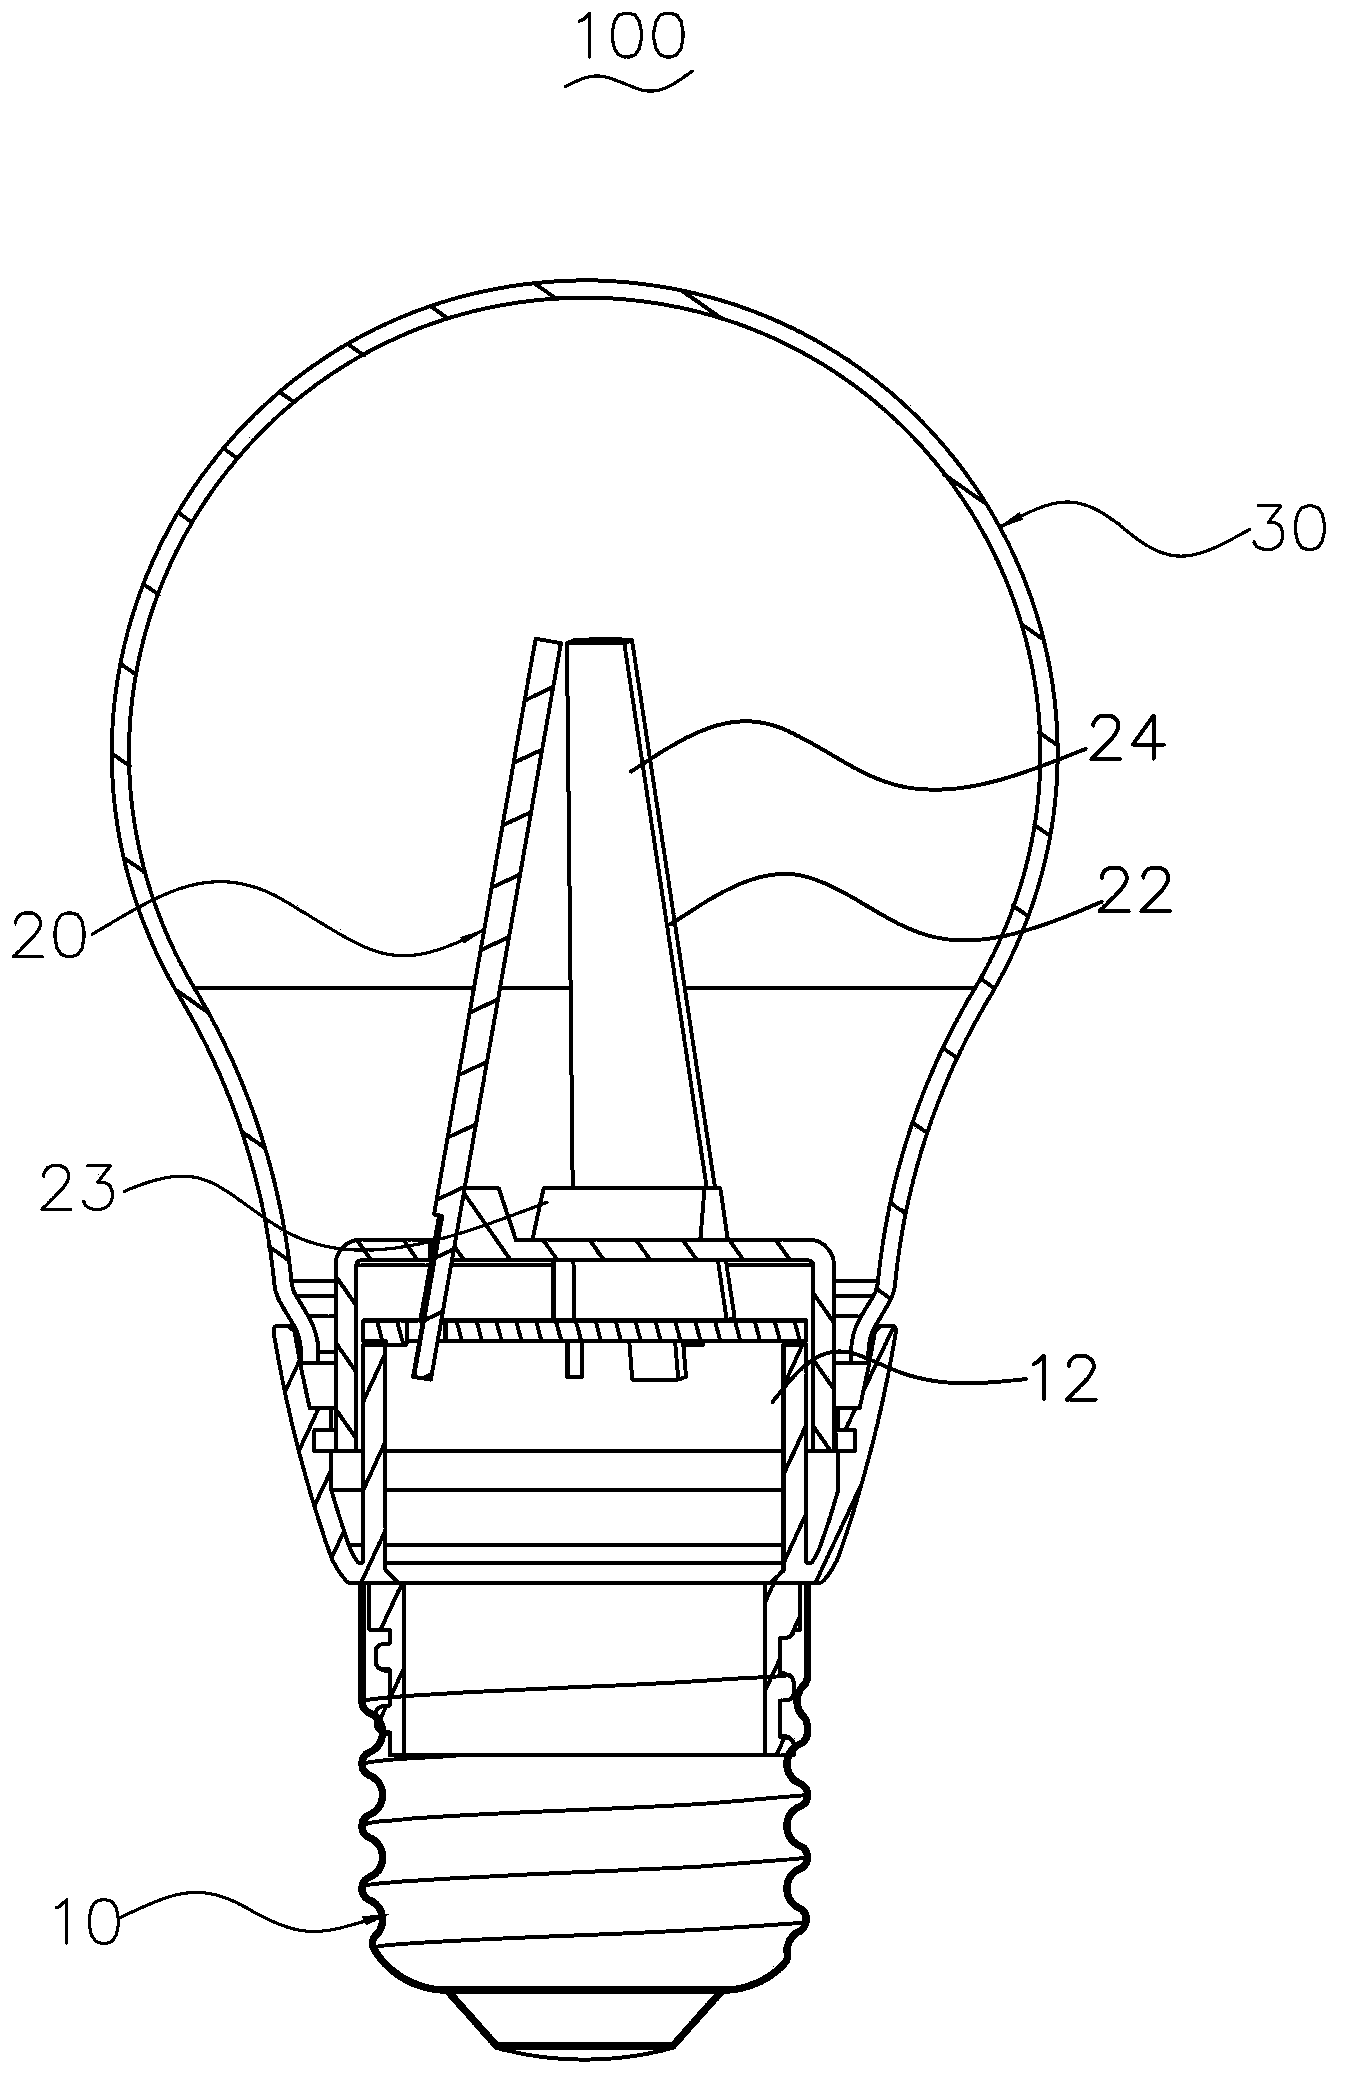 LED lamp with large light emission angle